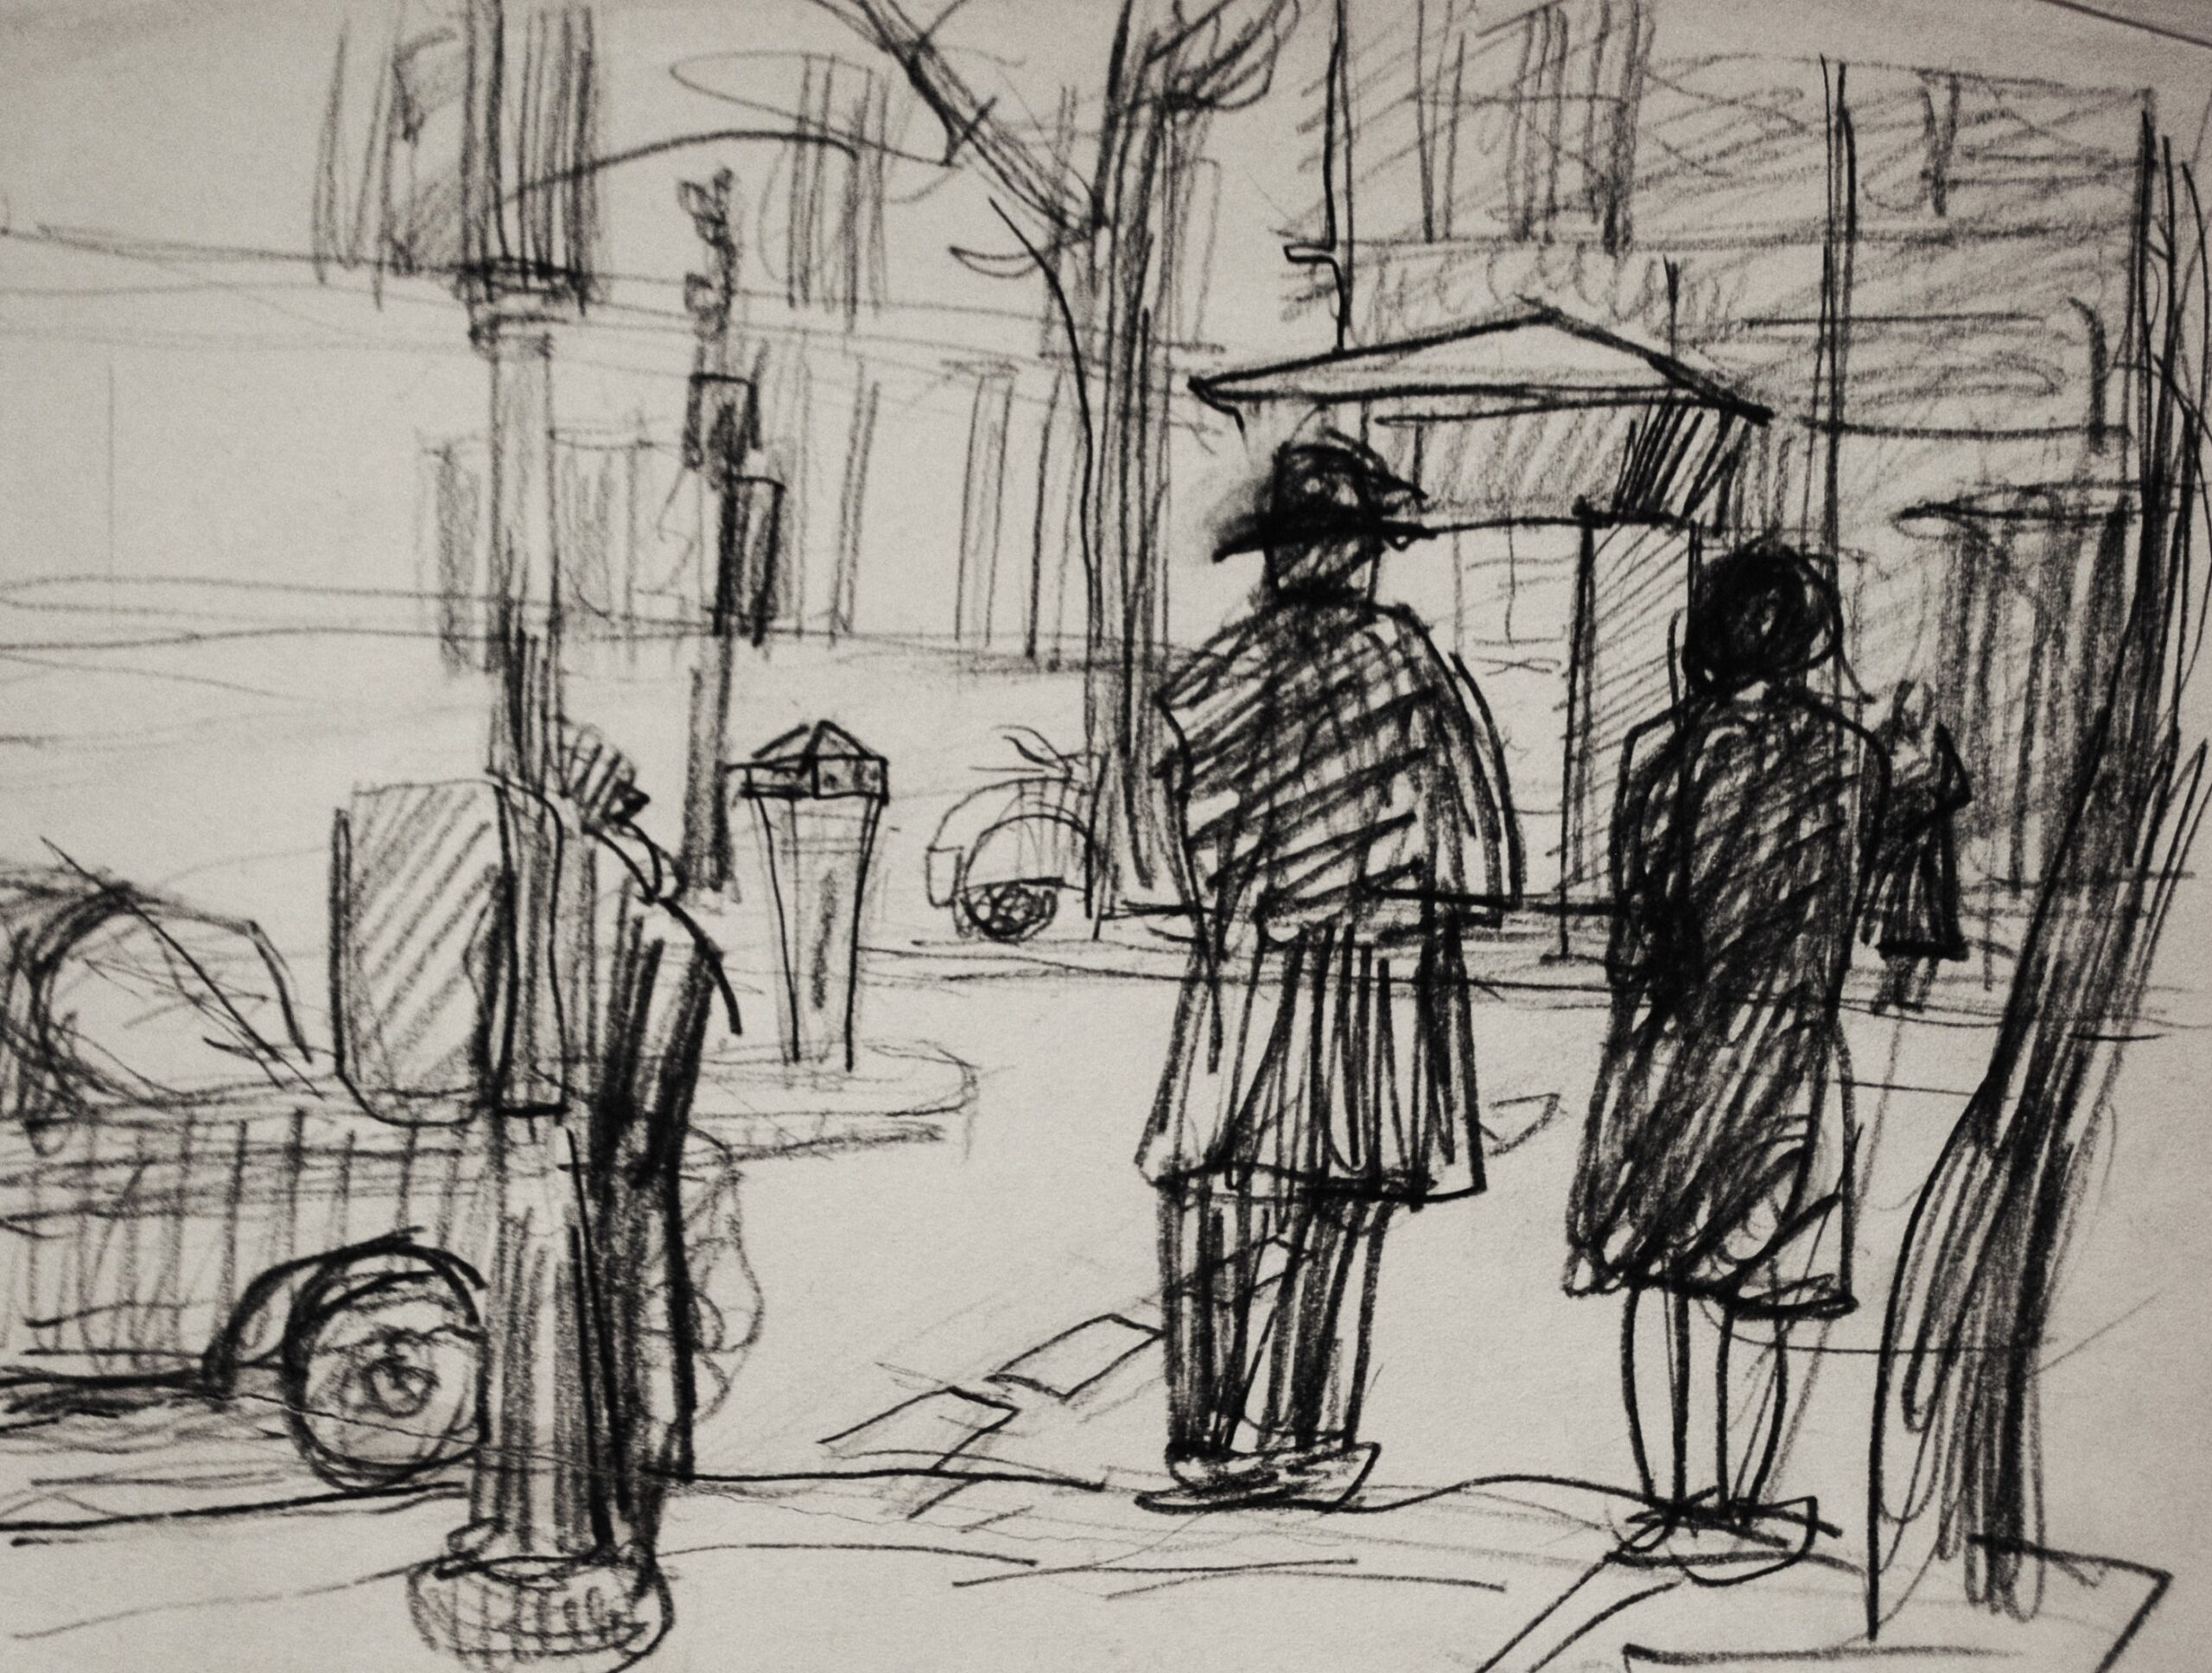 Dibujo de José Manaut titulado Calle con hombres, mujer y coche. Carboncillo sobre papel.